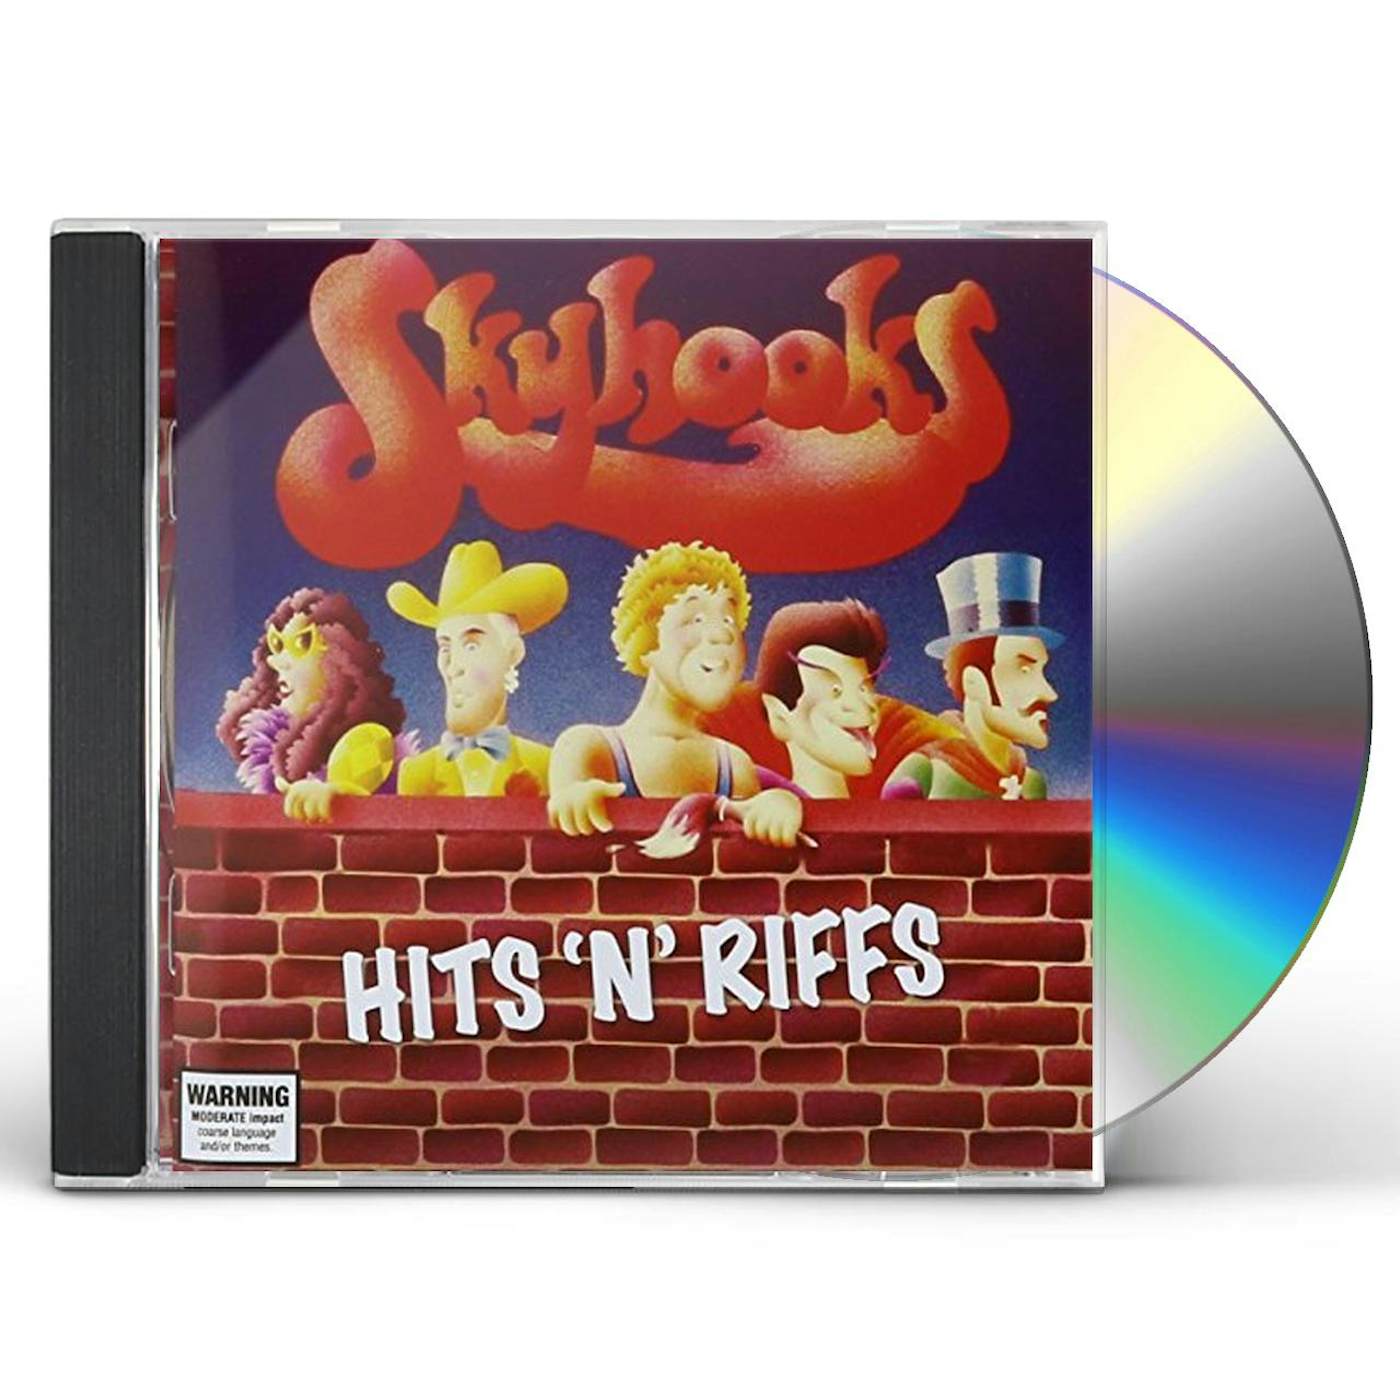 Skyhooks HITS N RIFFS CD